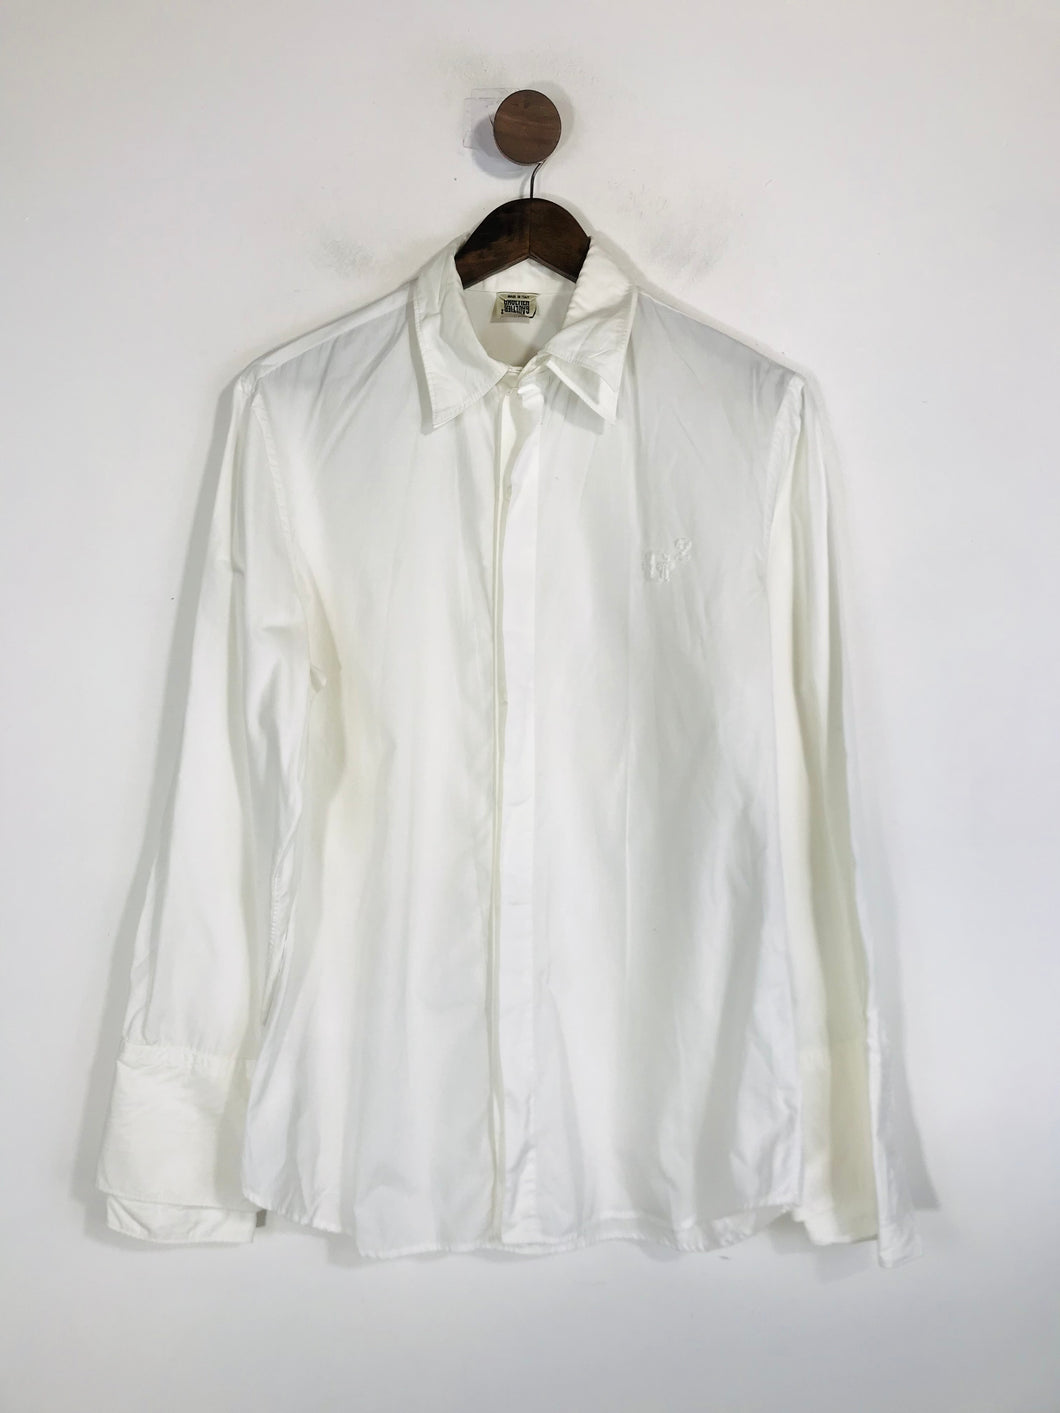 Jean Paul Gaultier Men's Cotton Button-Up Shirt | L | White